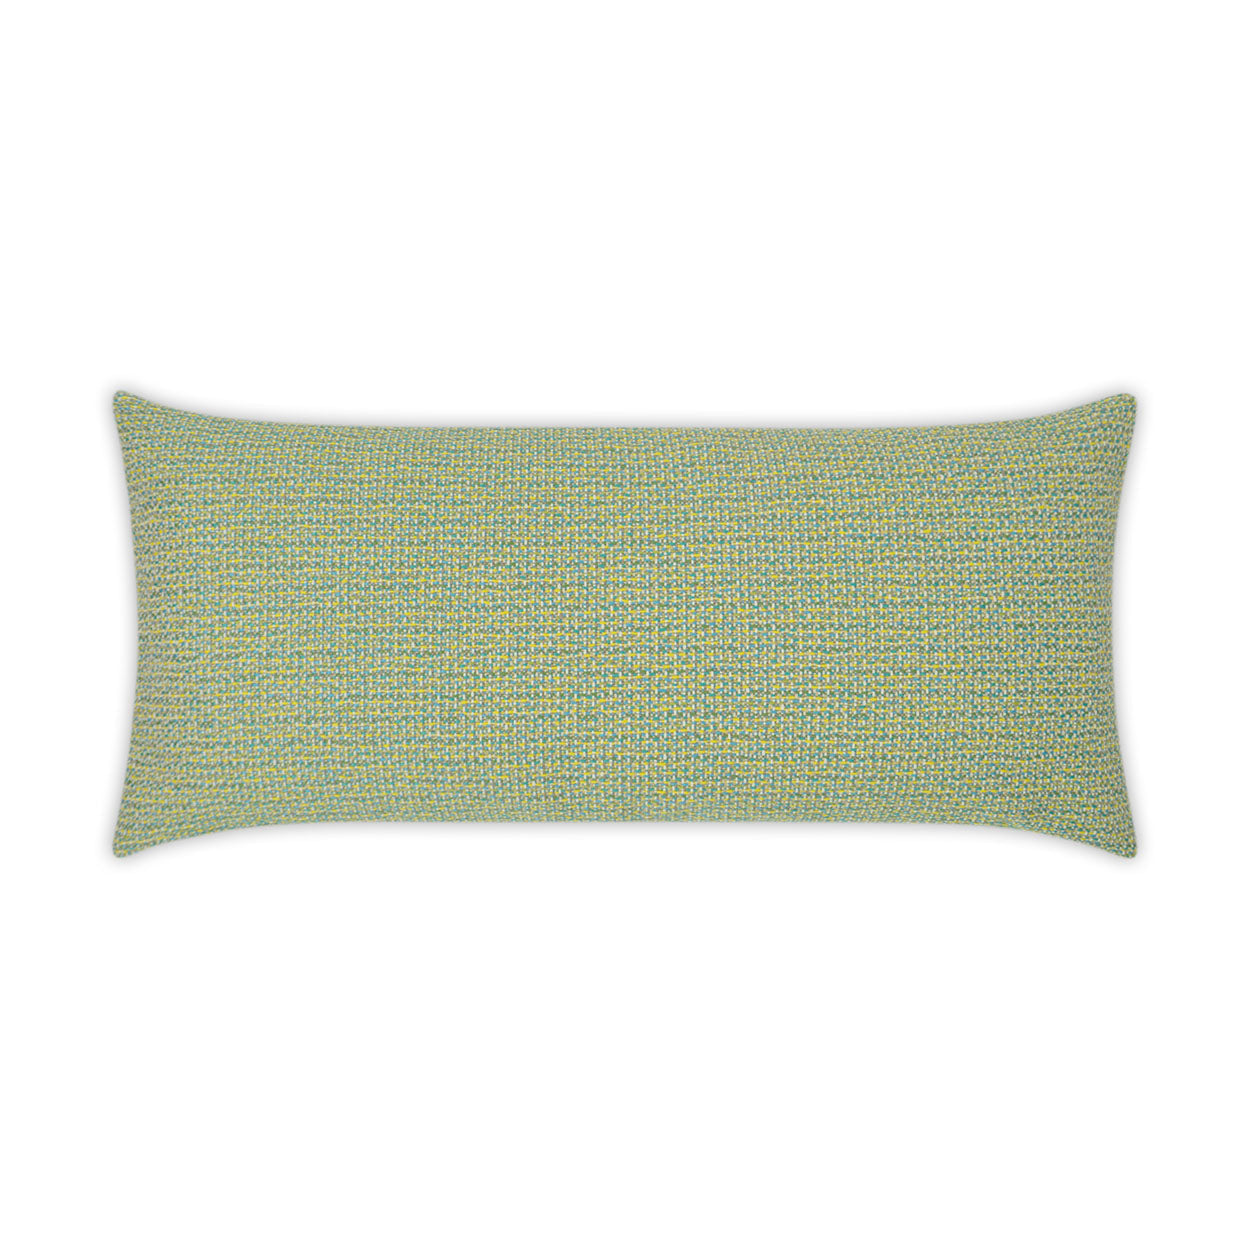 Outdoor Melan Lumbar Pillow - Caribe